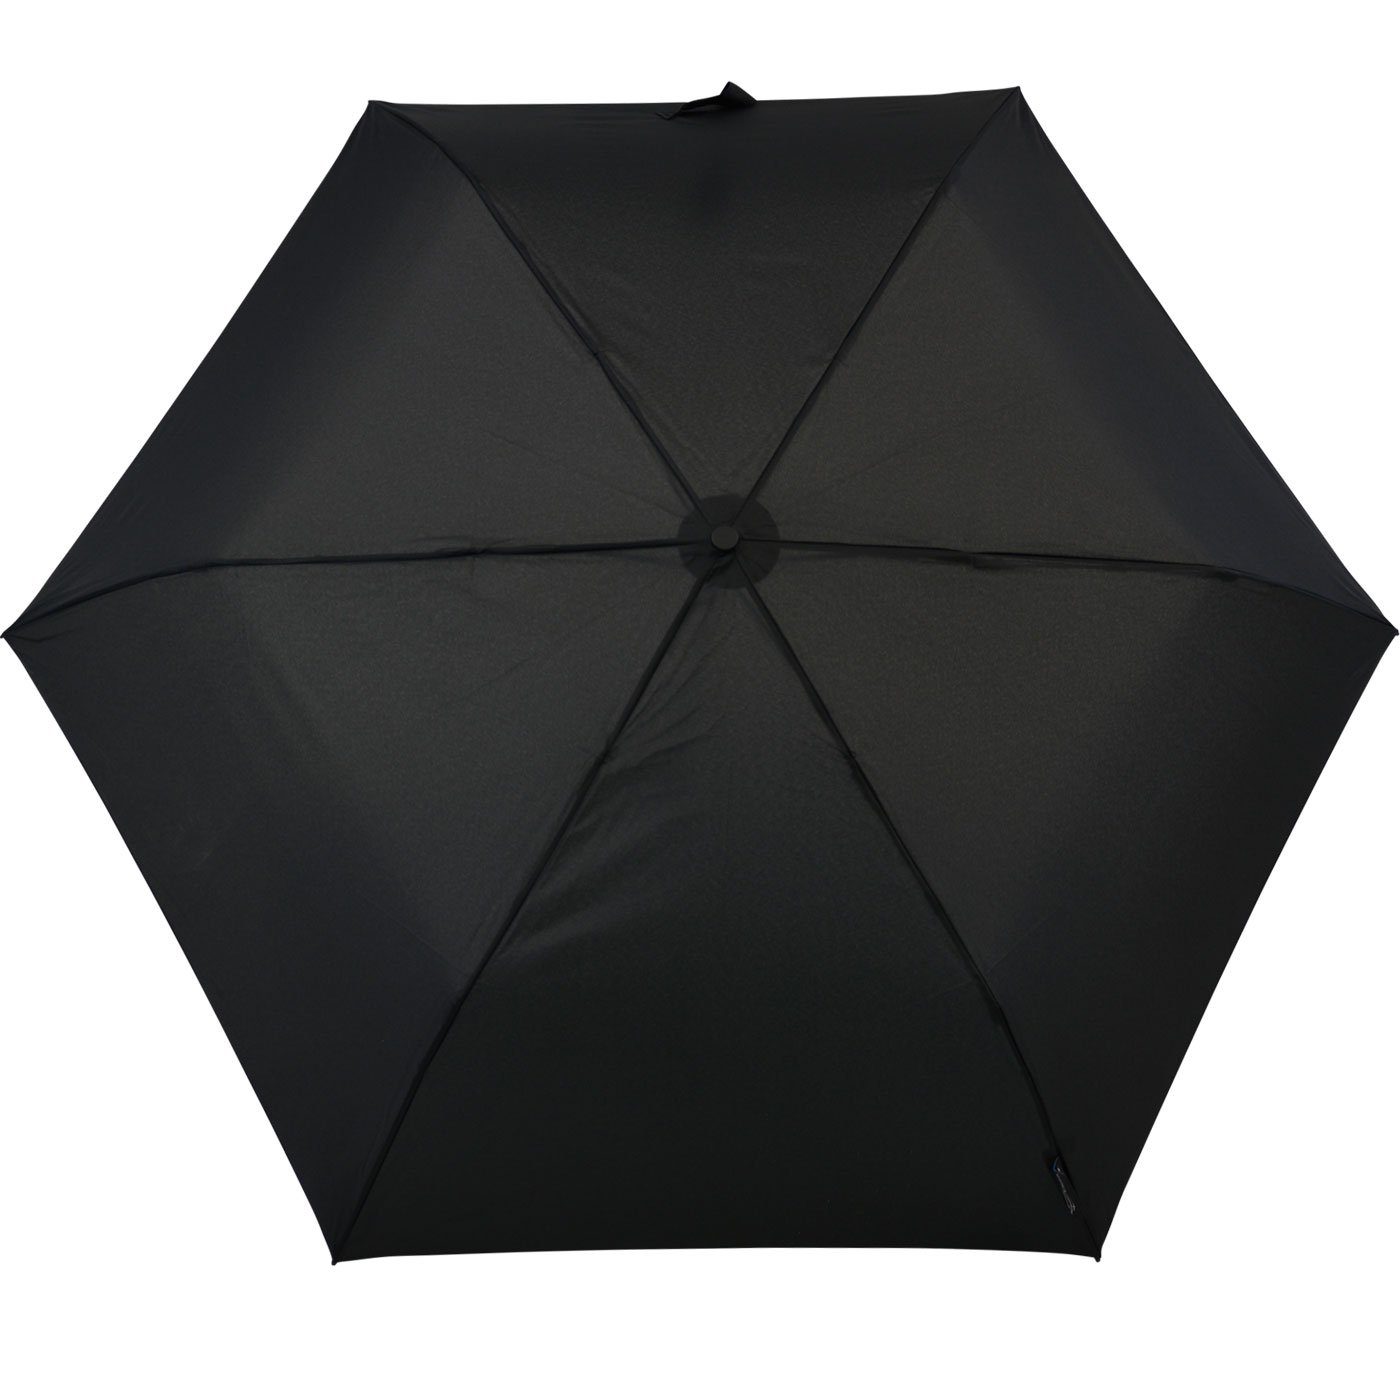 Impliva Taschenregenschirm ist belasten TravelLight zu leichter immer extrem dieses ohne Gramm 105 Leichtgewicht Mini-Schirm, schwarz dabei